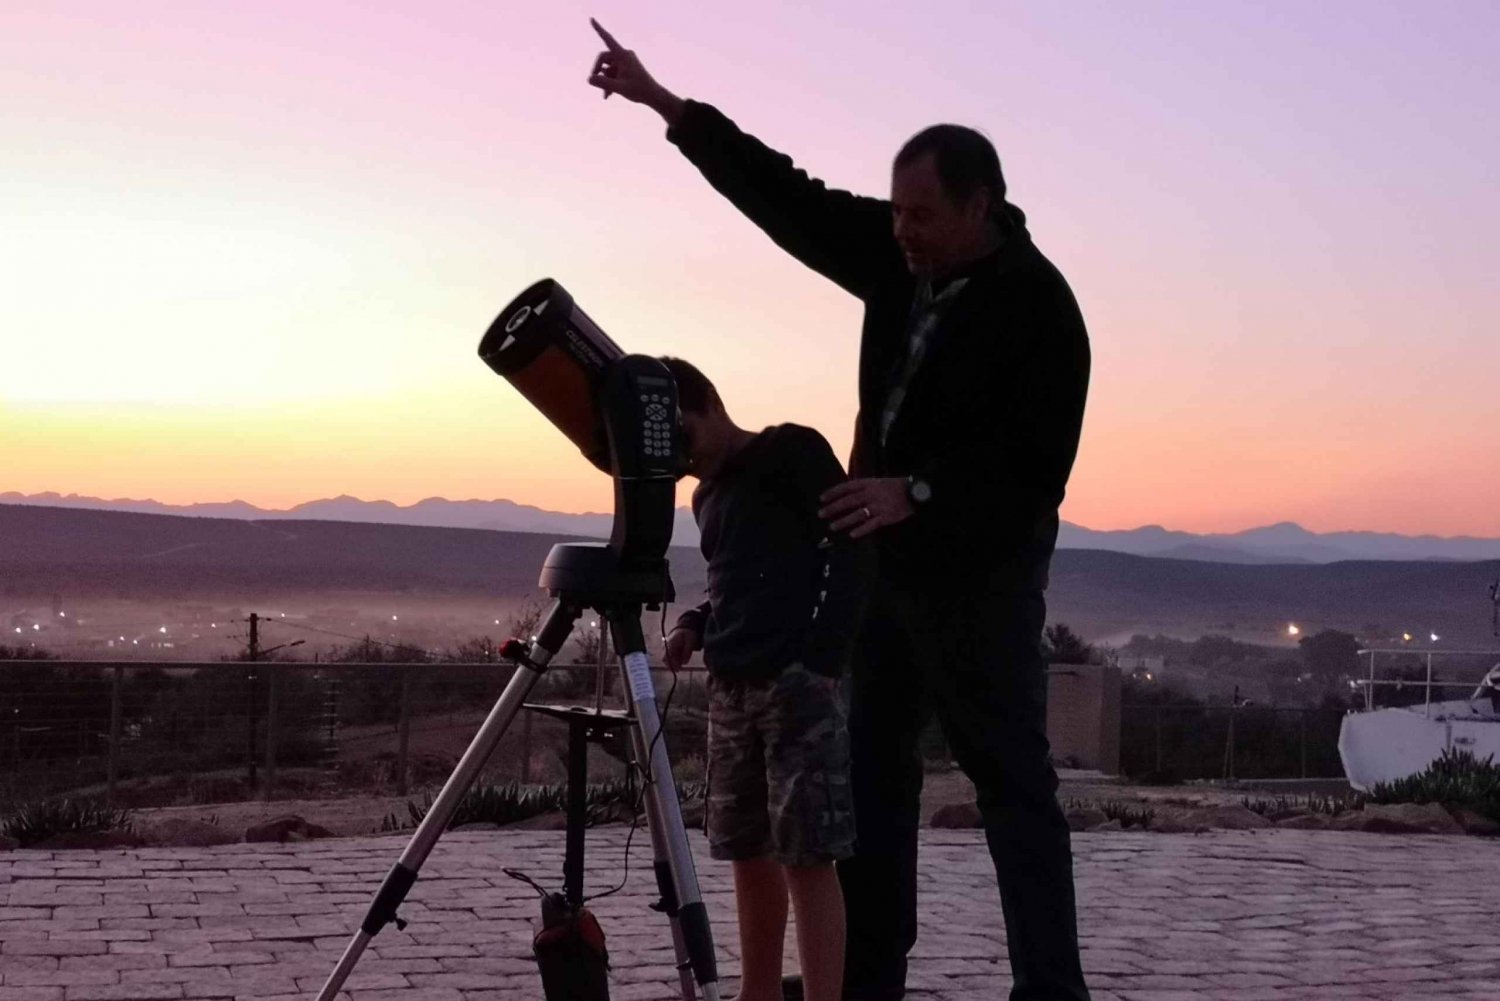 Oudtshoorn: Observación de estrellas con telescopio y guía